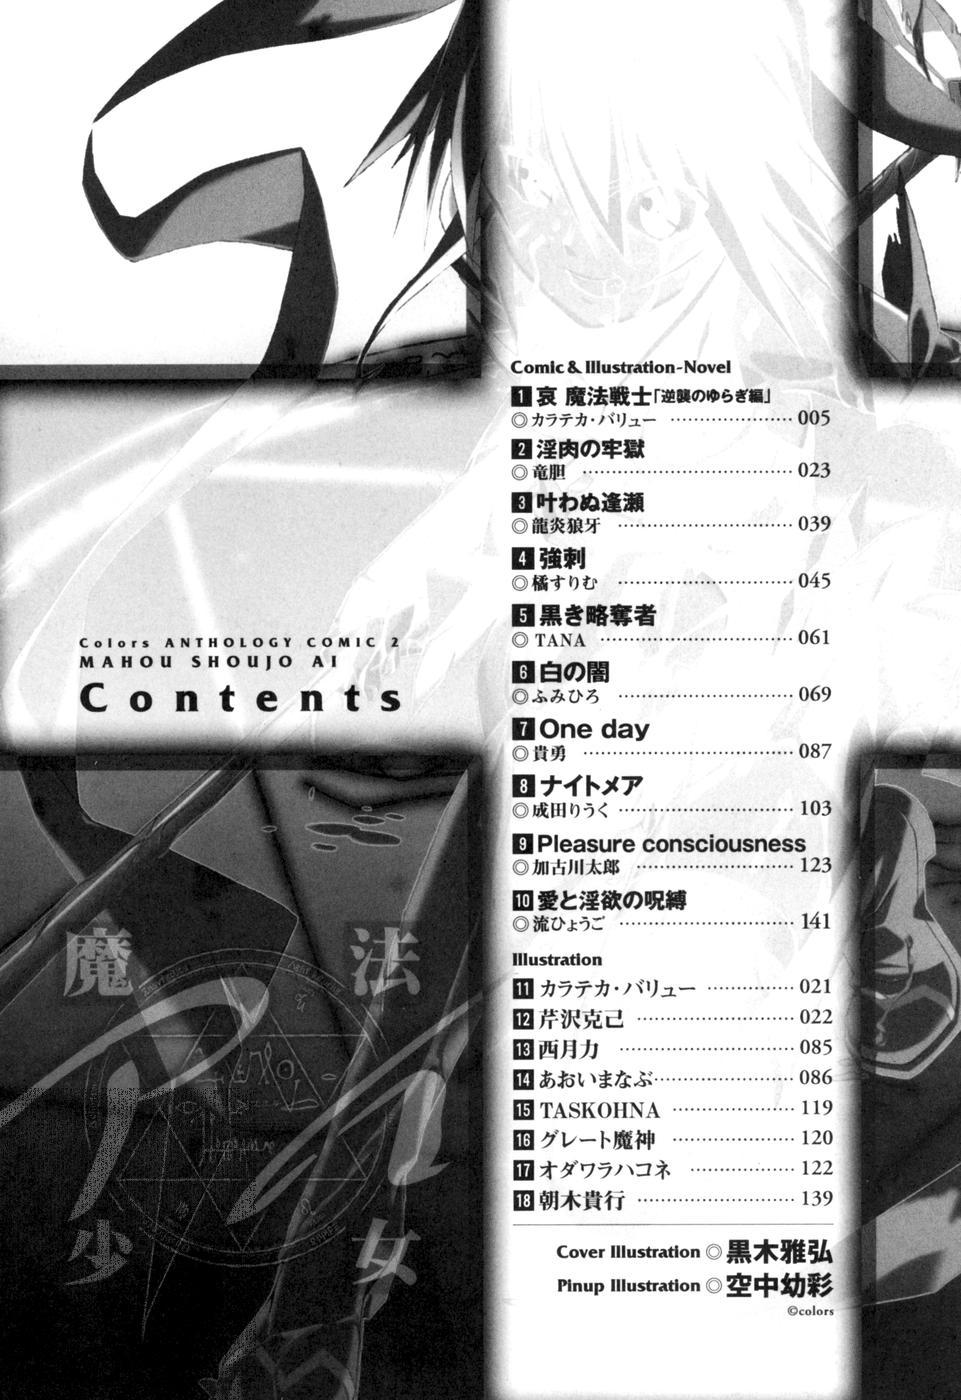 colors Anthology Comic 2 Mahou Shoujo Ai 5